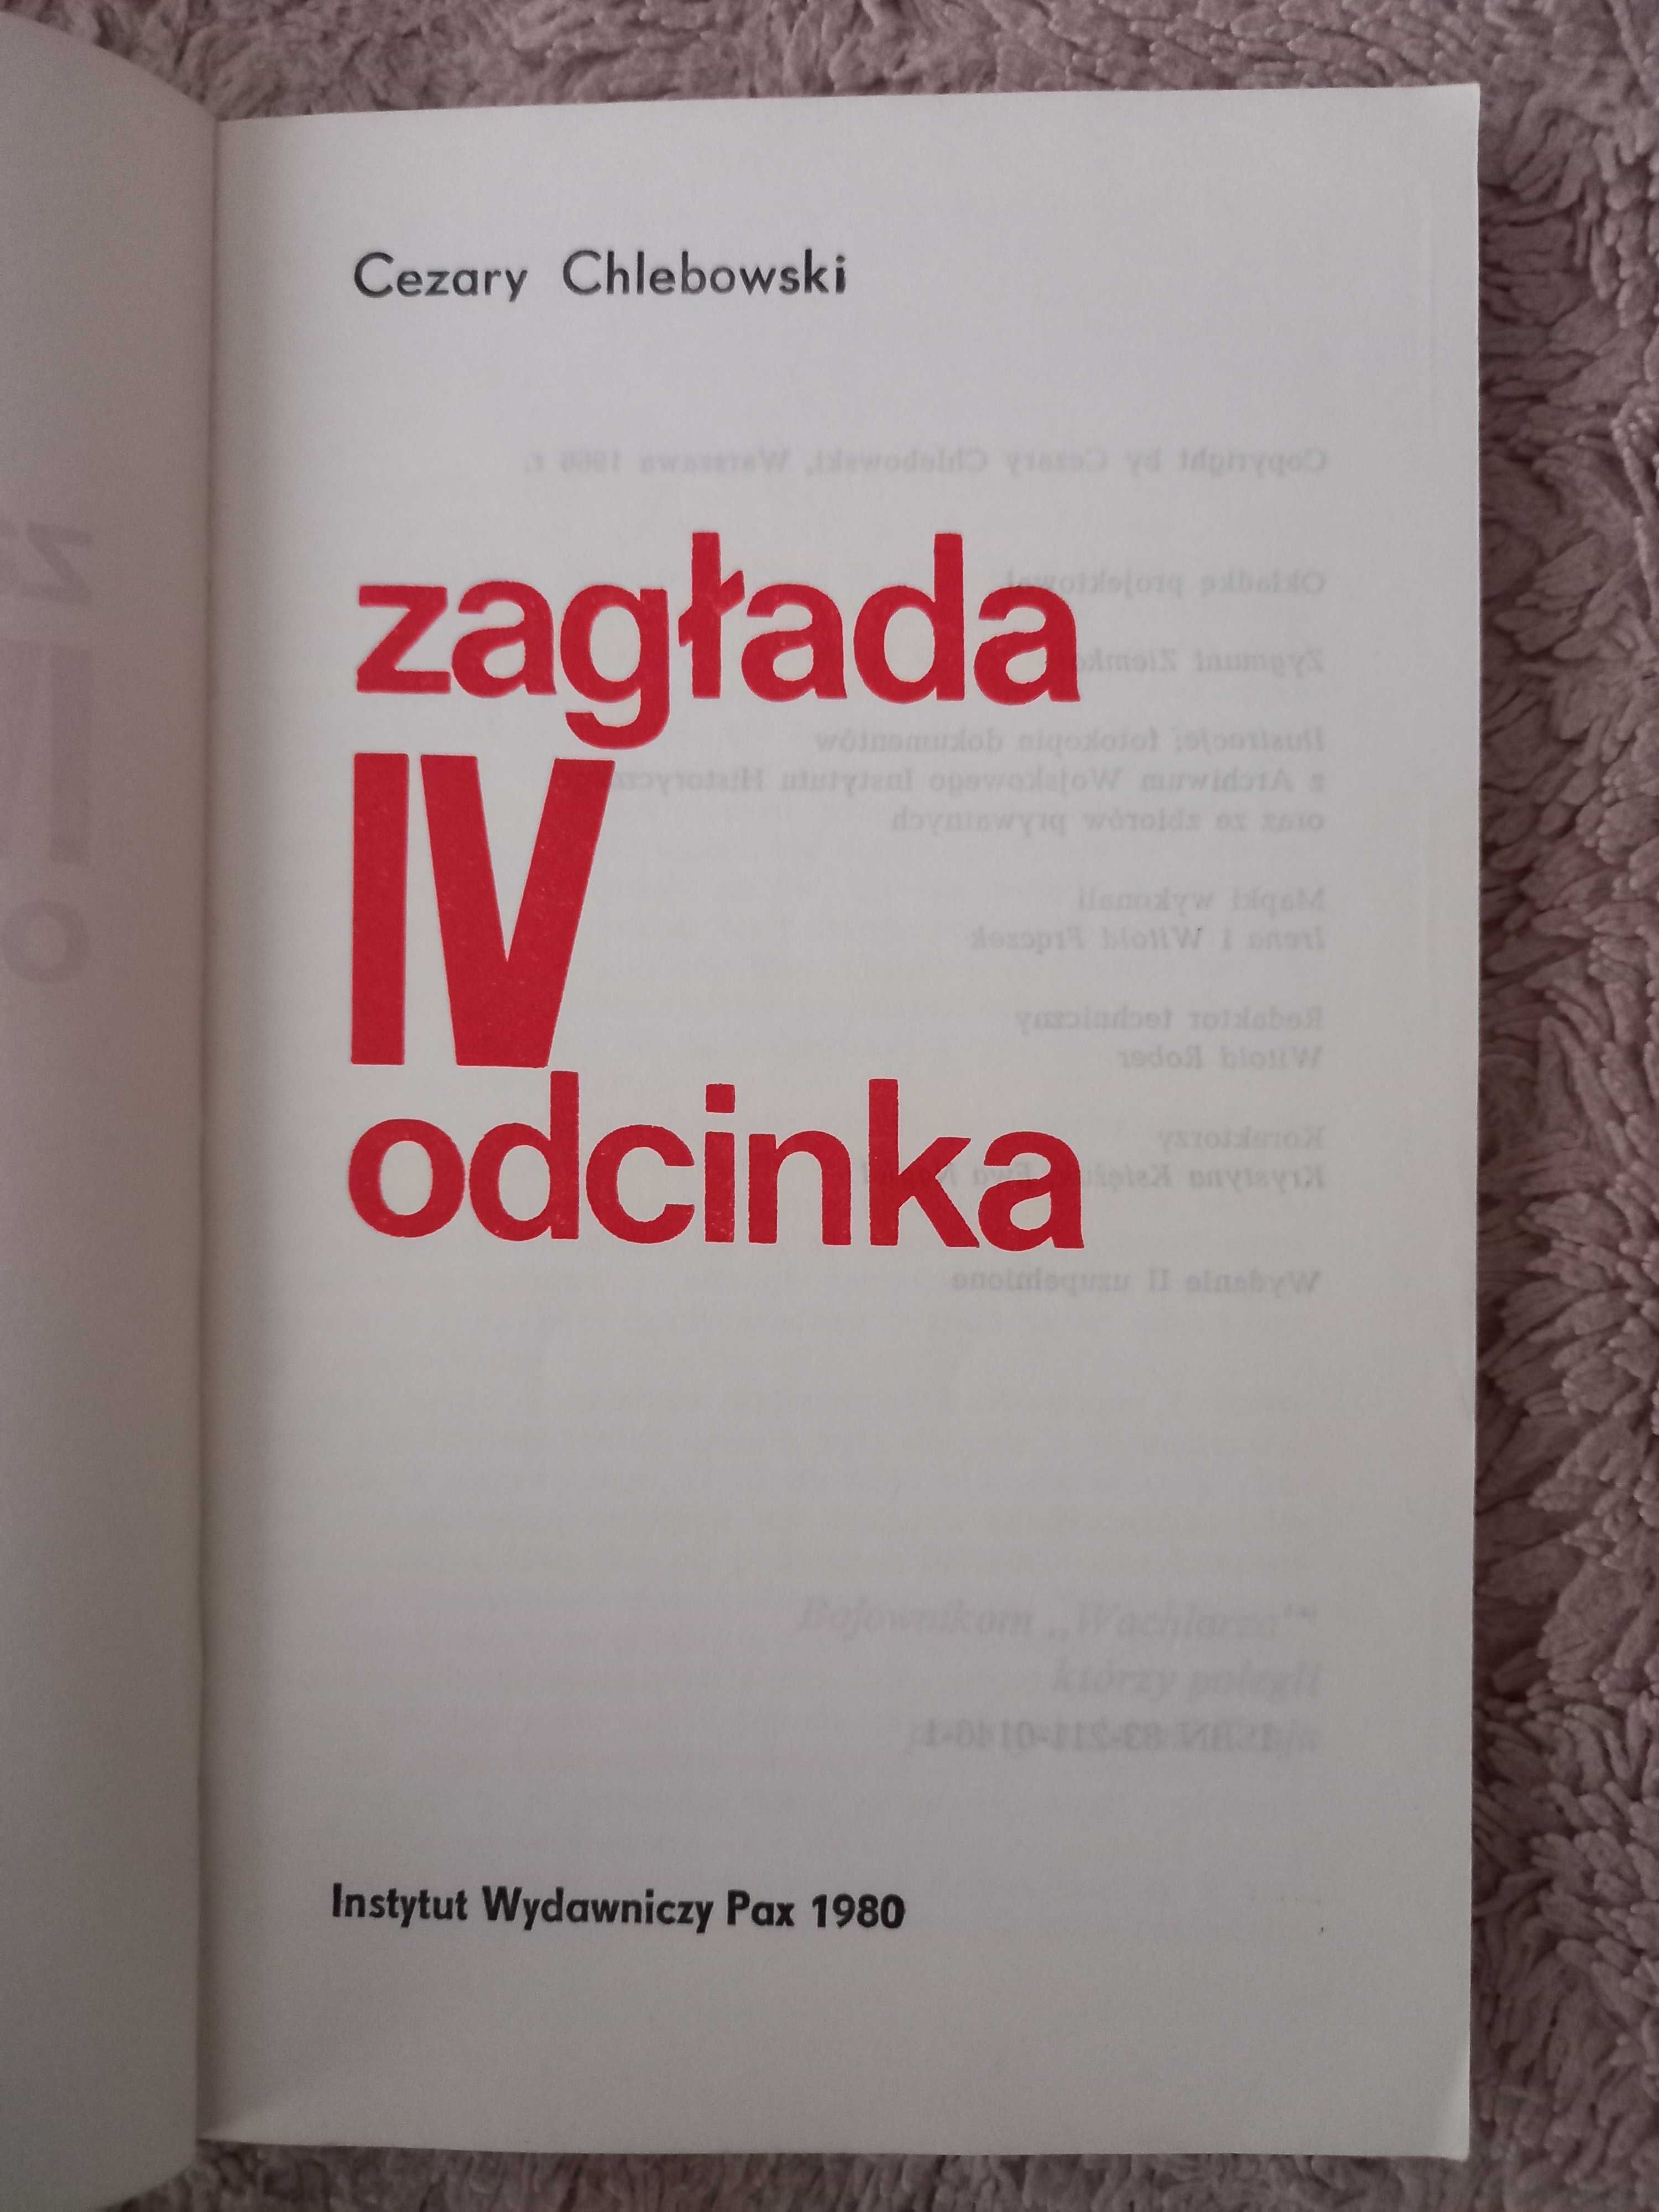 "Zagłada IV odcinka", Cezary Chlebowski